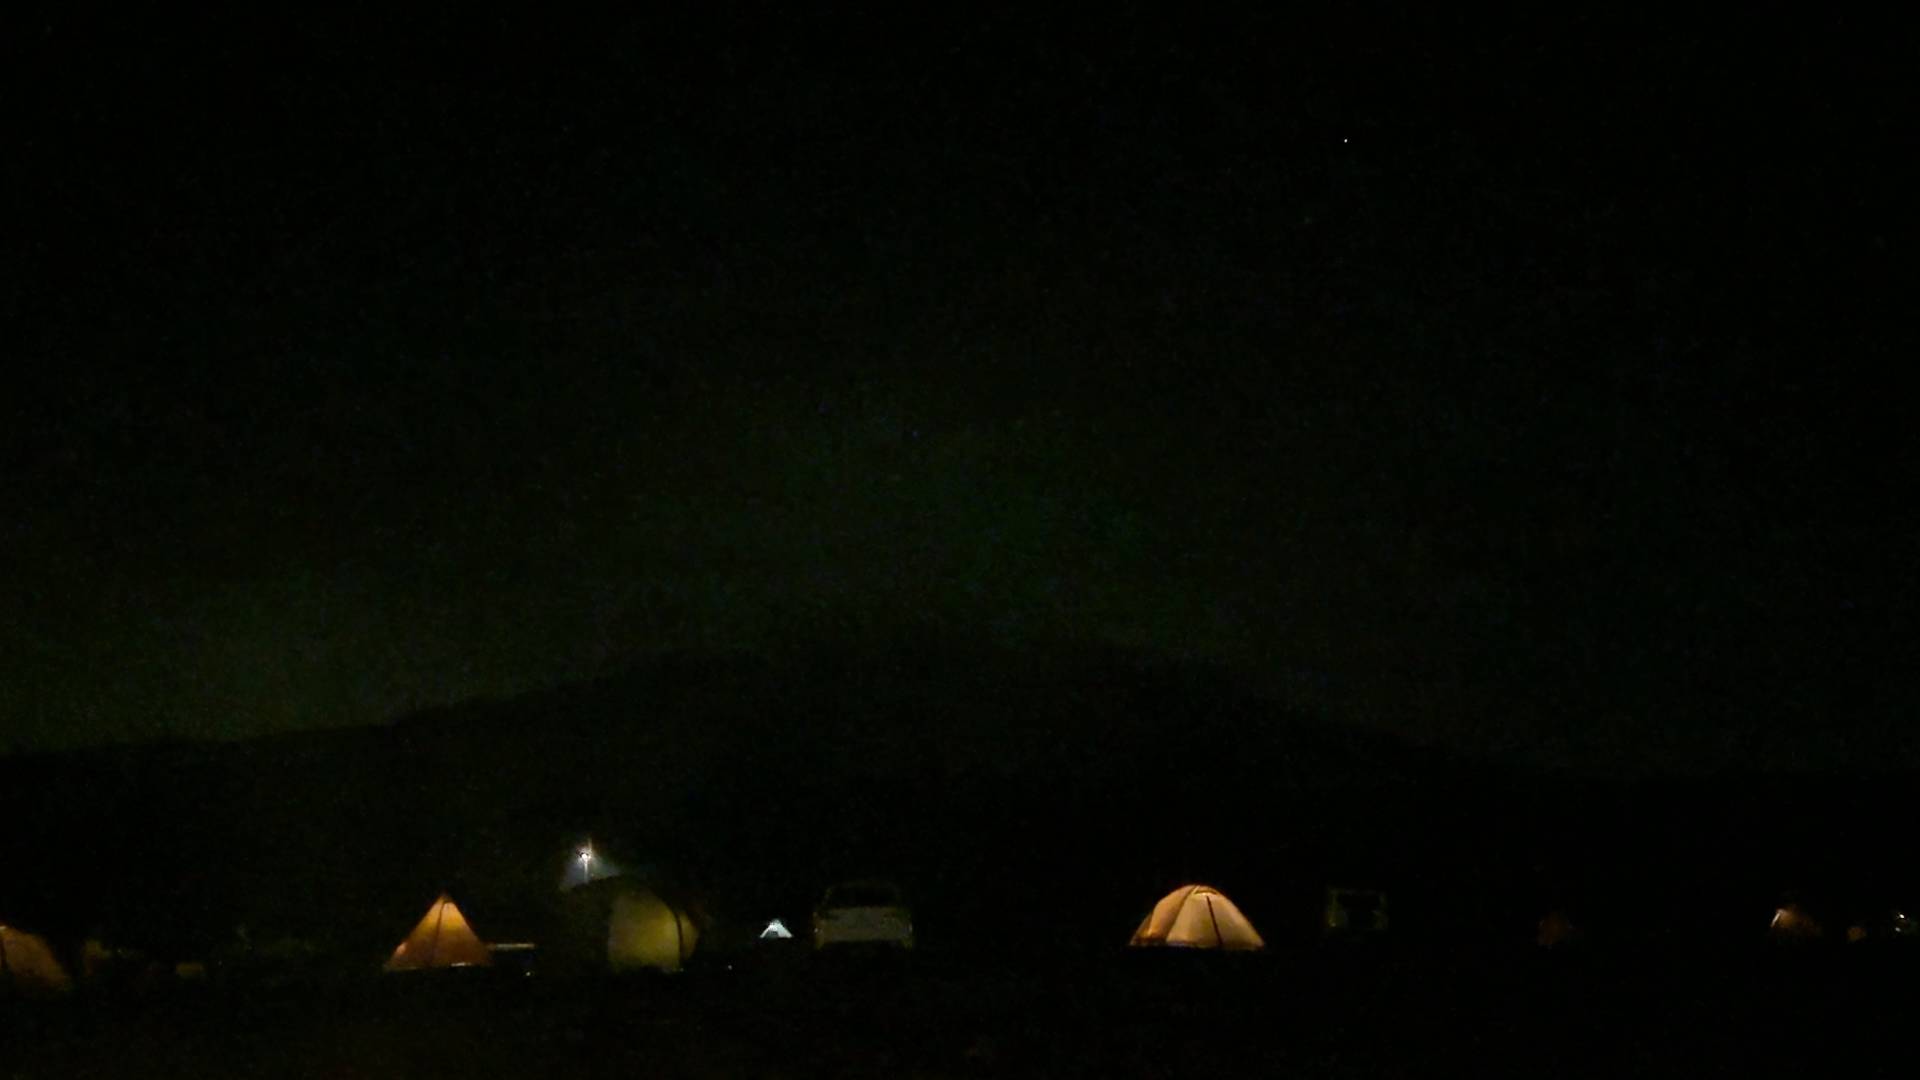 【軽バンキャンプ20の1】ふもとっぱらキャンプ場で1年ぶりの車中泊キャンプ(前編)